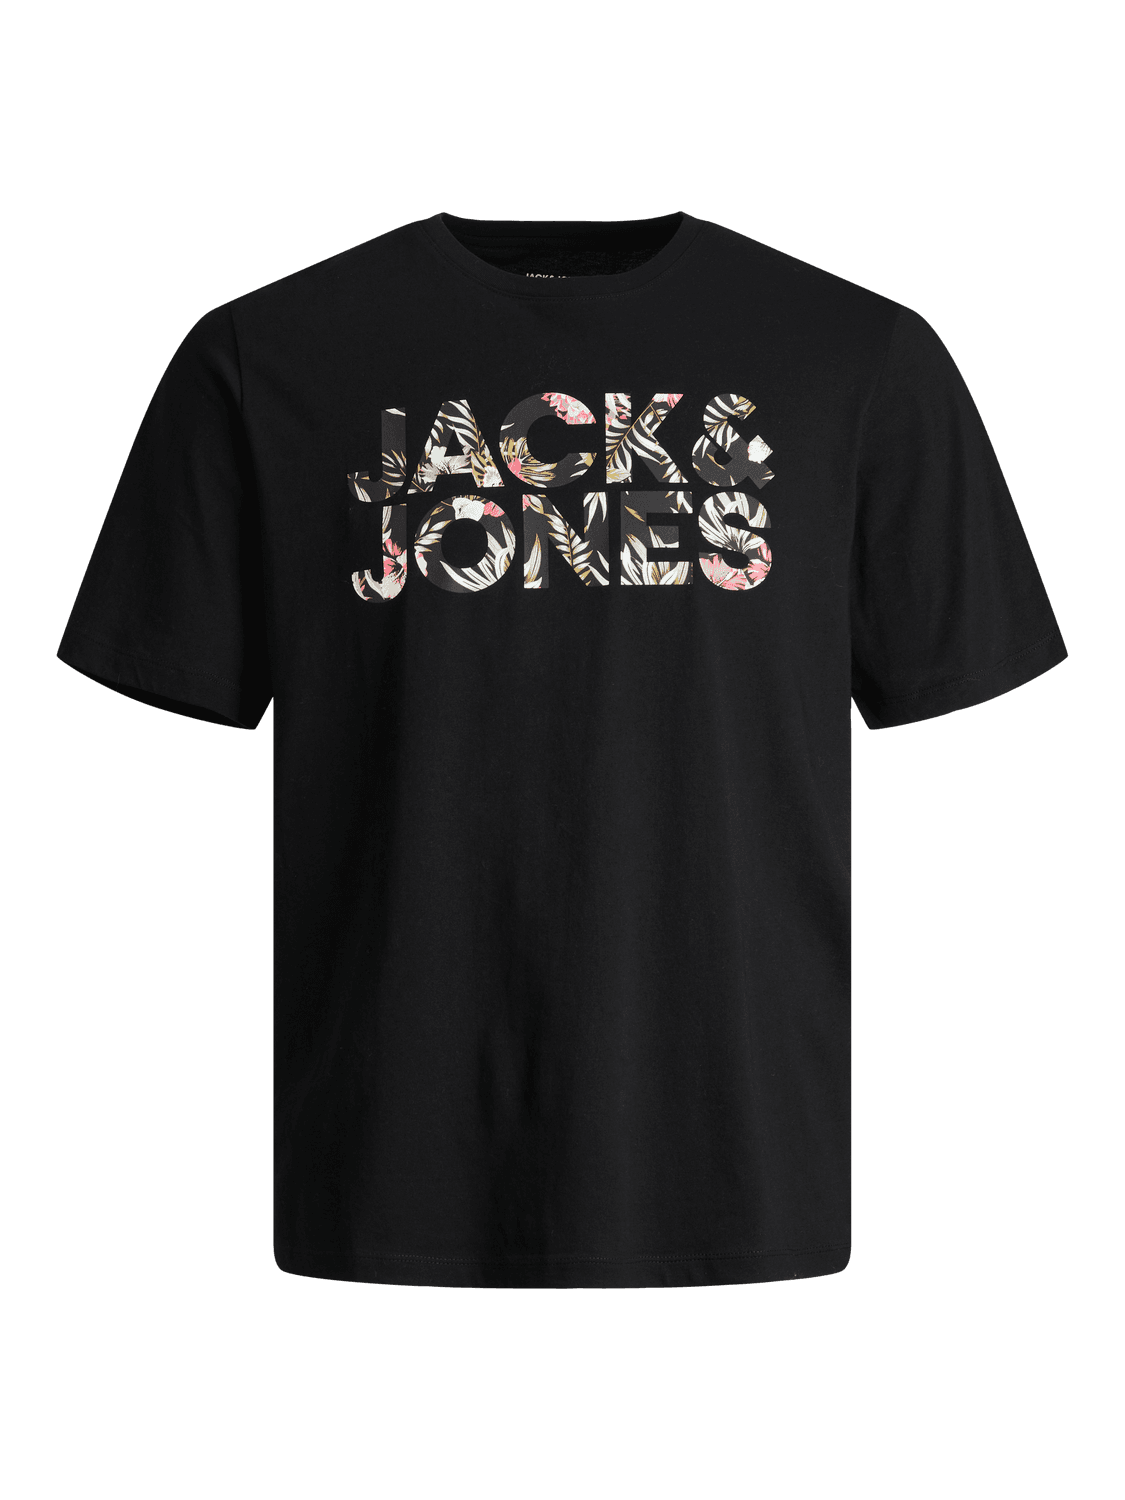 JACK & JONES Muška majica 12250683, Crna